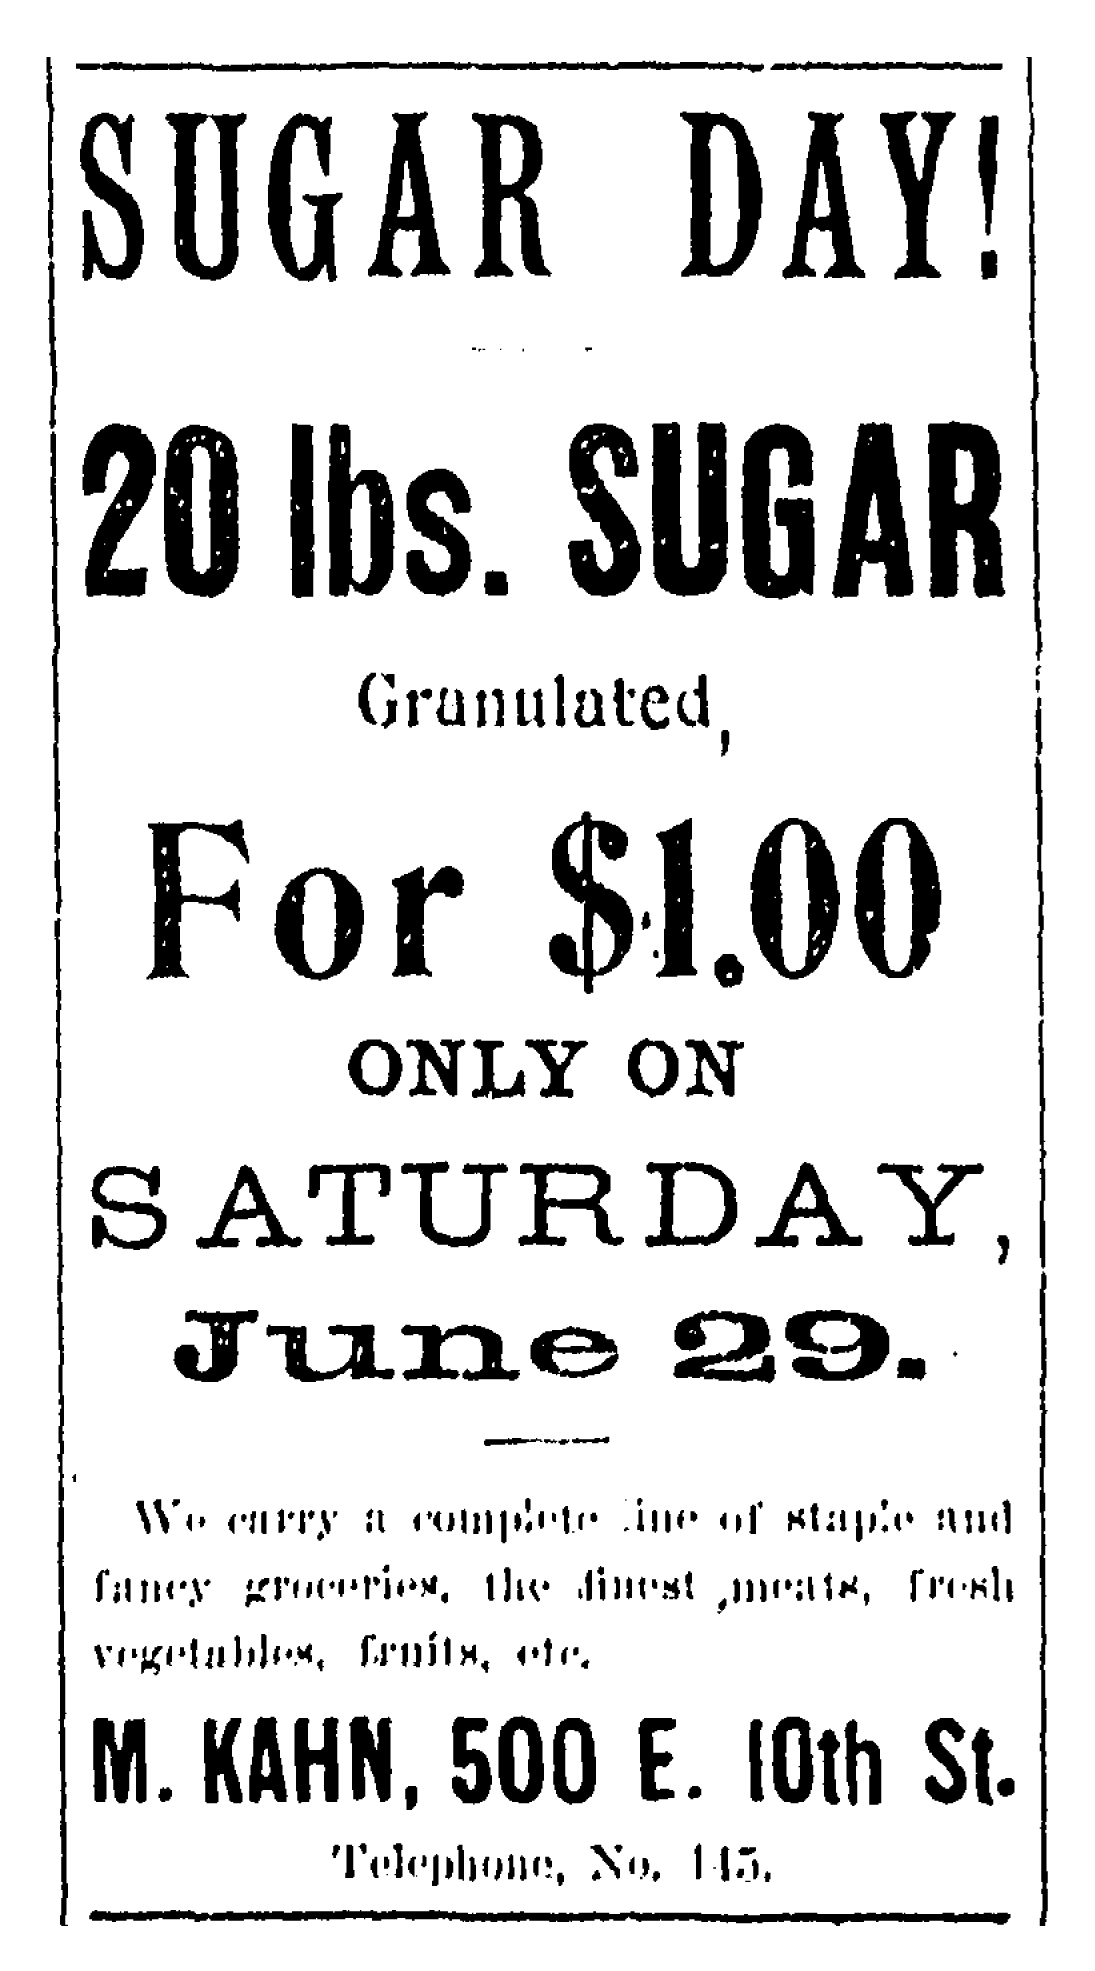 The Herald Democrat, June 28, 1895